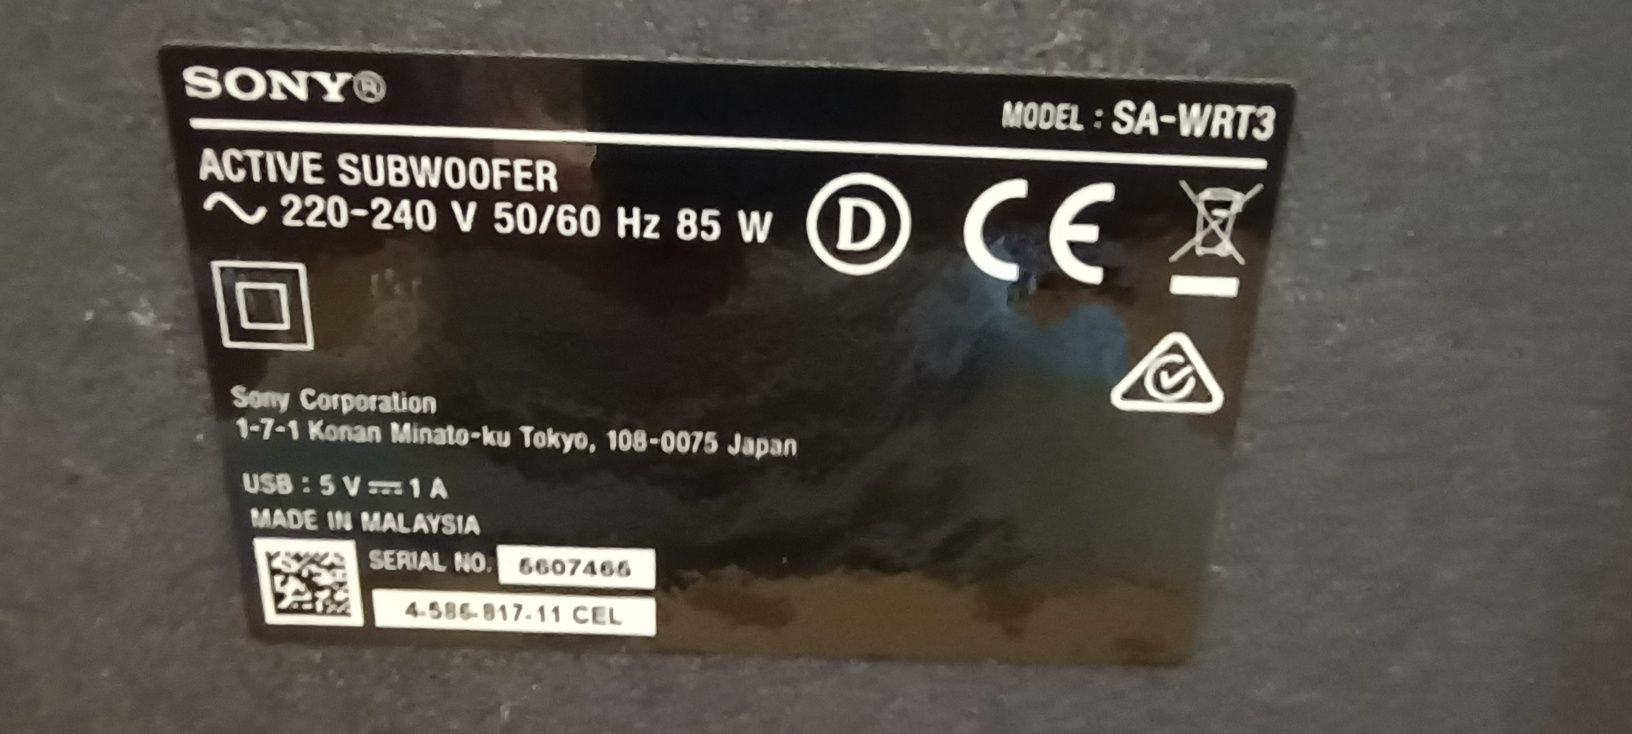 Soundbar Sony 5.1 CH, USB, bluetooth.